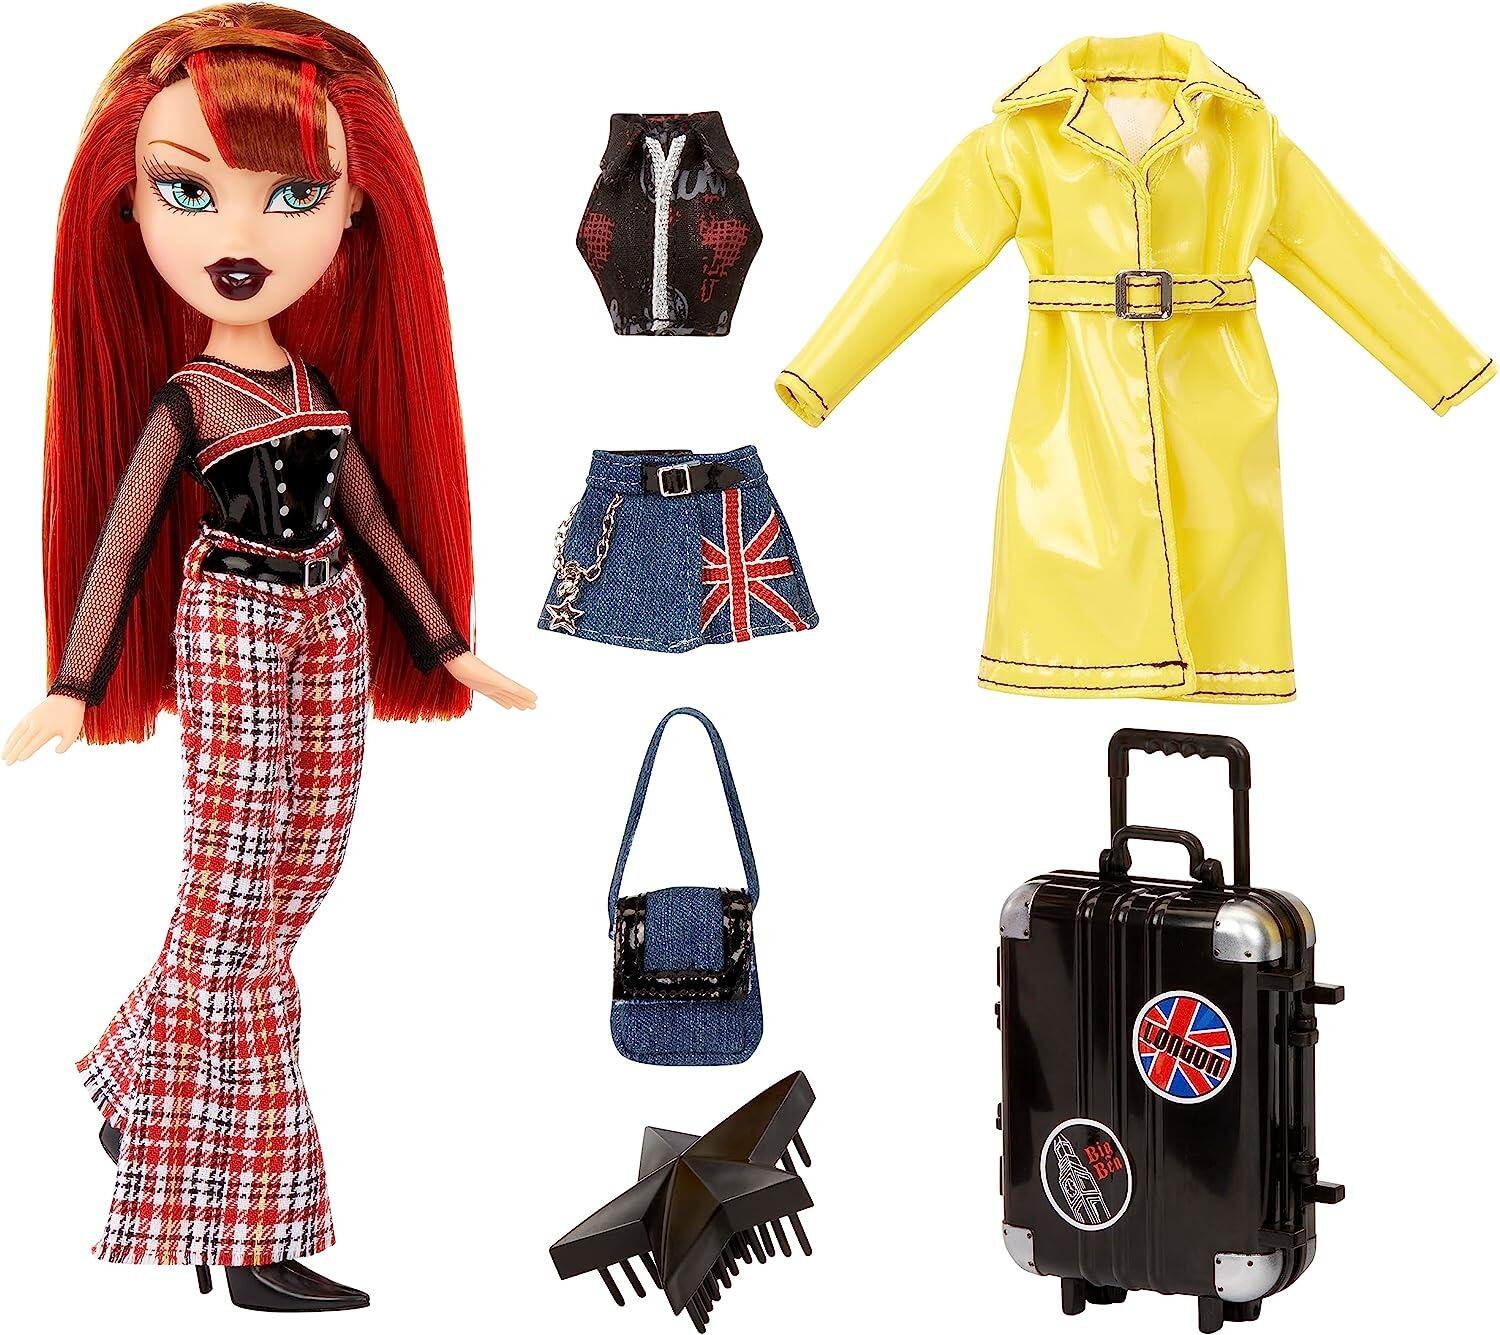 Buy Bratz Pretty ‘N’ Punk Meygan Fashion Doll with 2 Outfits and ...